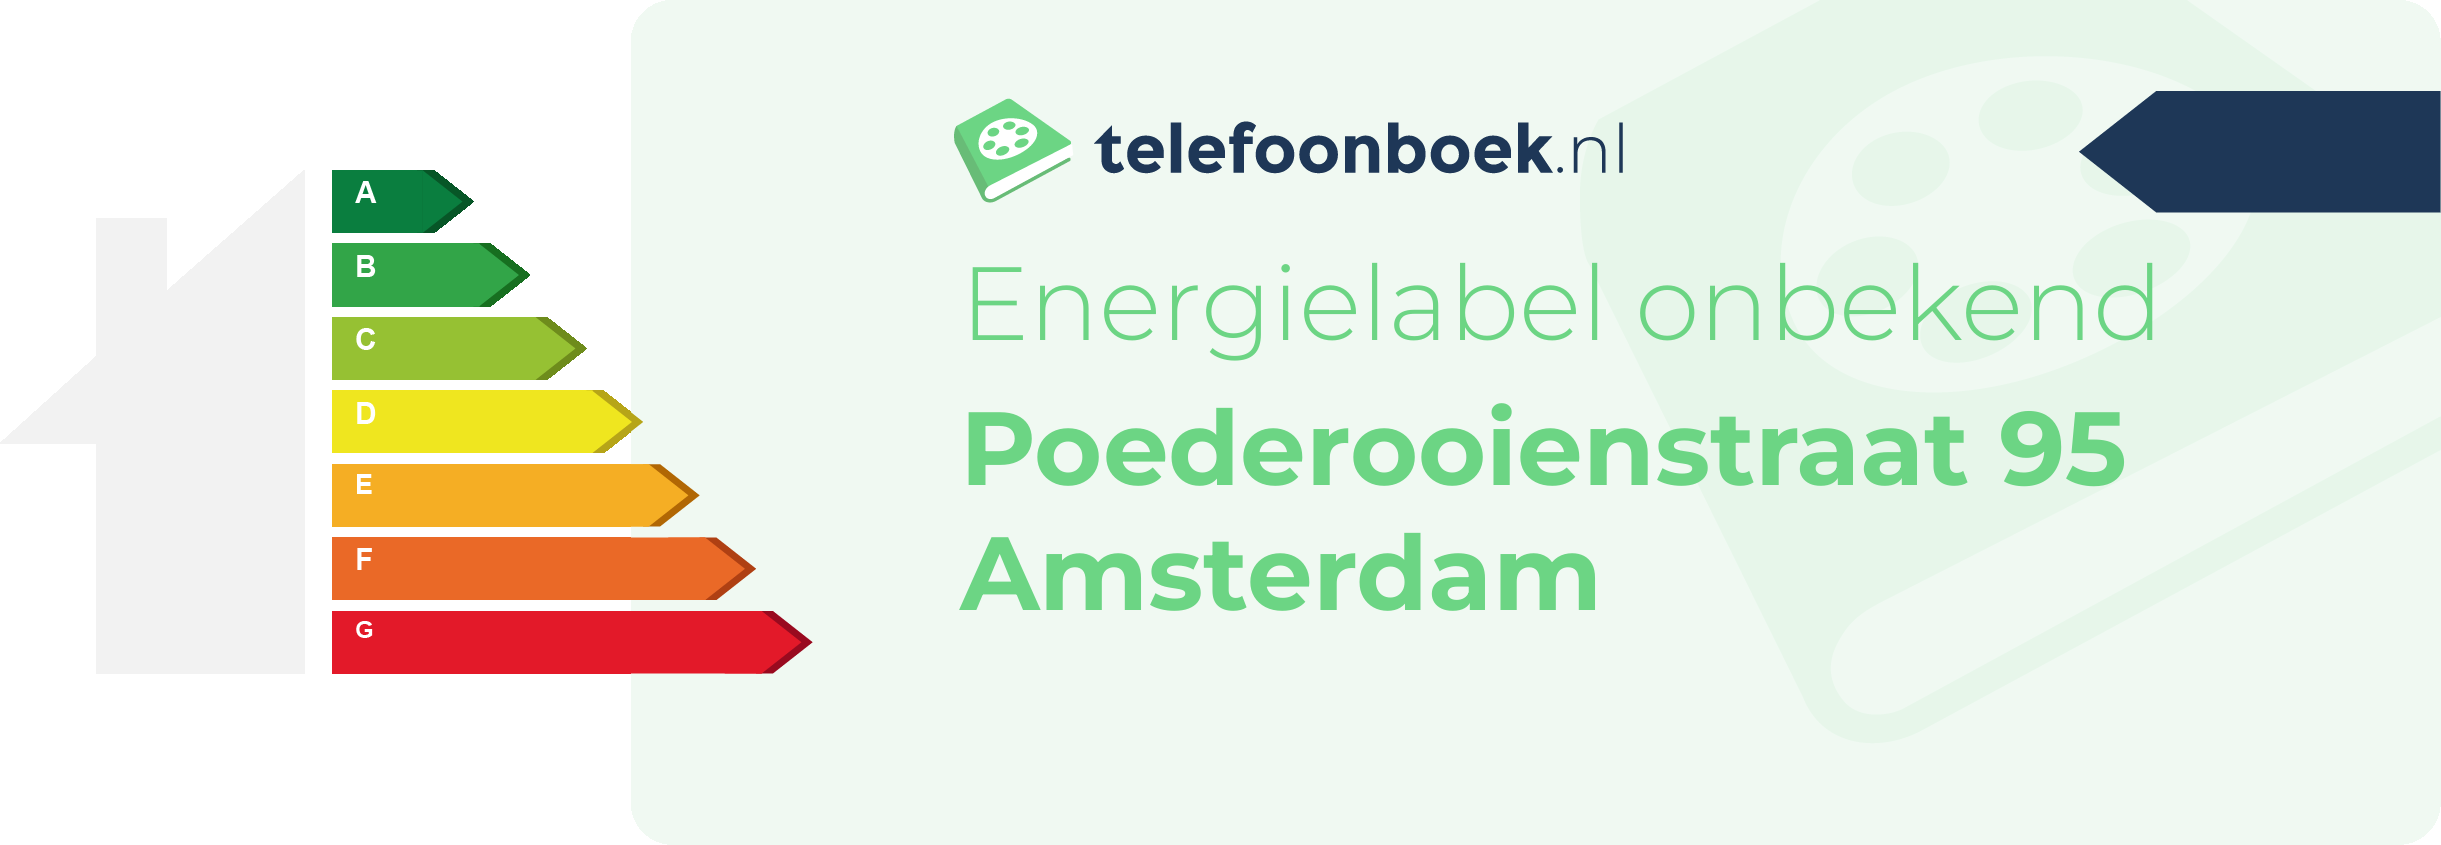 Energielabel Poederooienstraat 95 Amsterdam